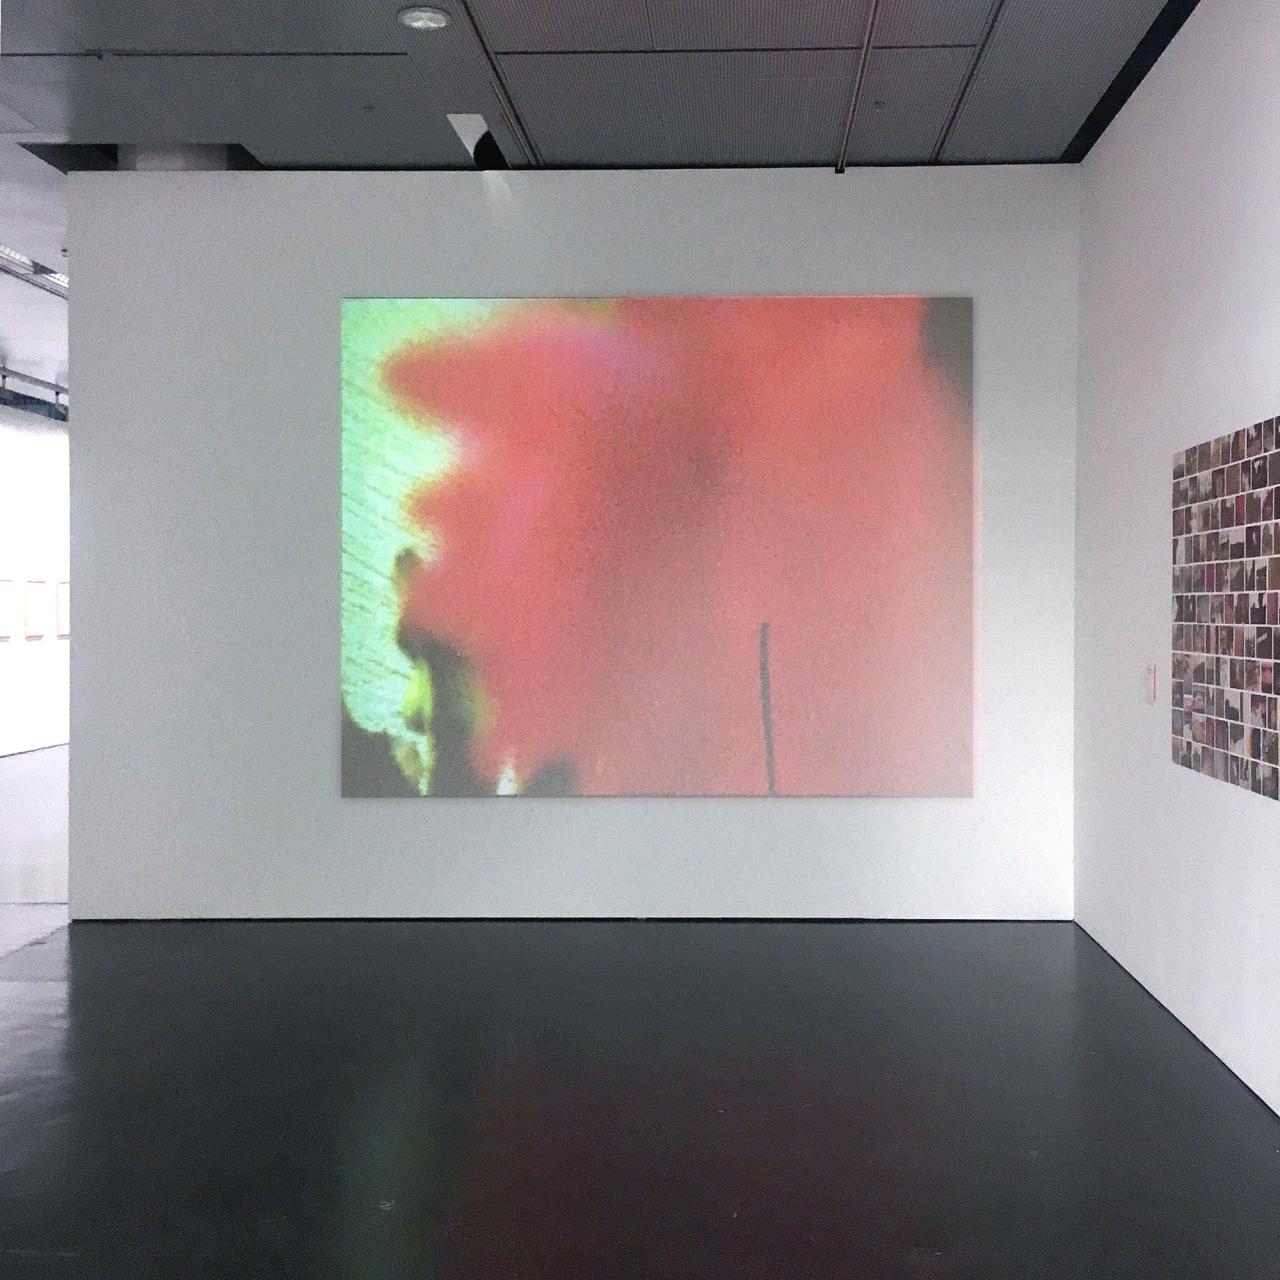 Projektion auf einer Wand zeigt abstraktes rotes Bild